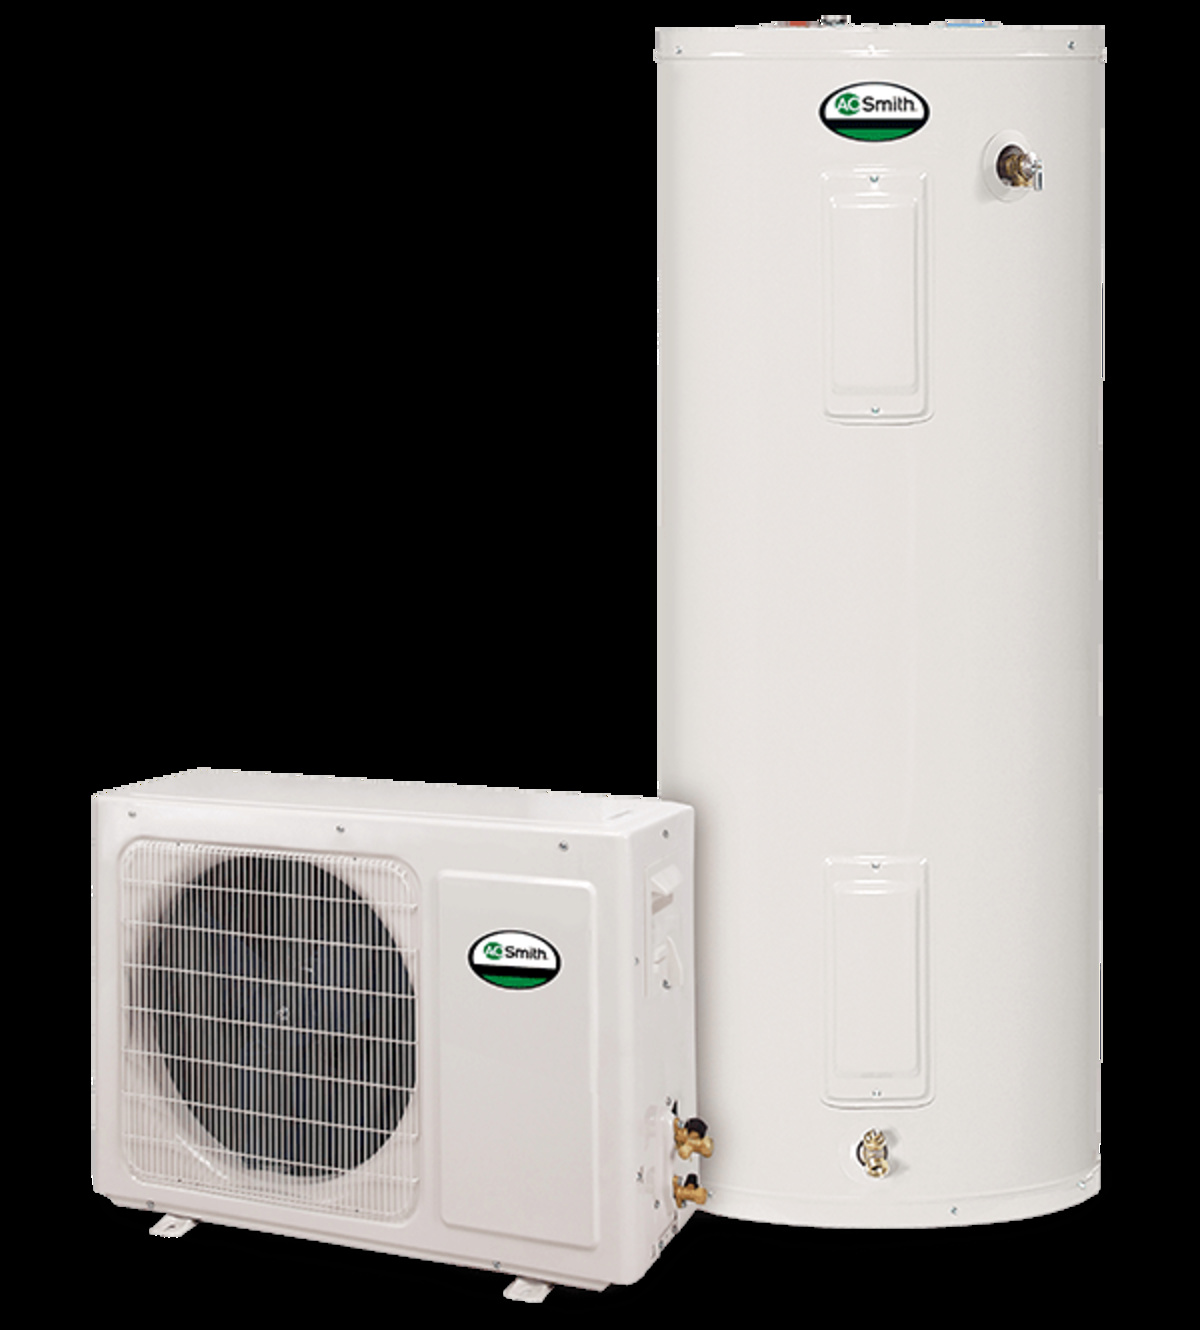 A.O. Smith air-to-air heat pump